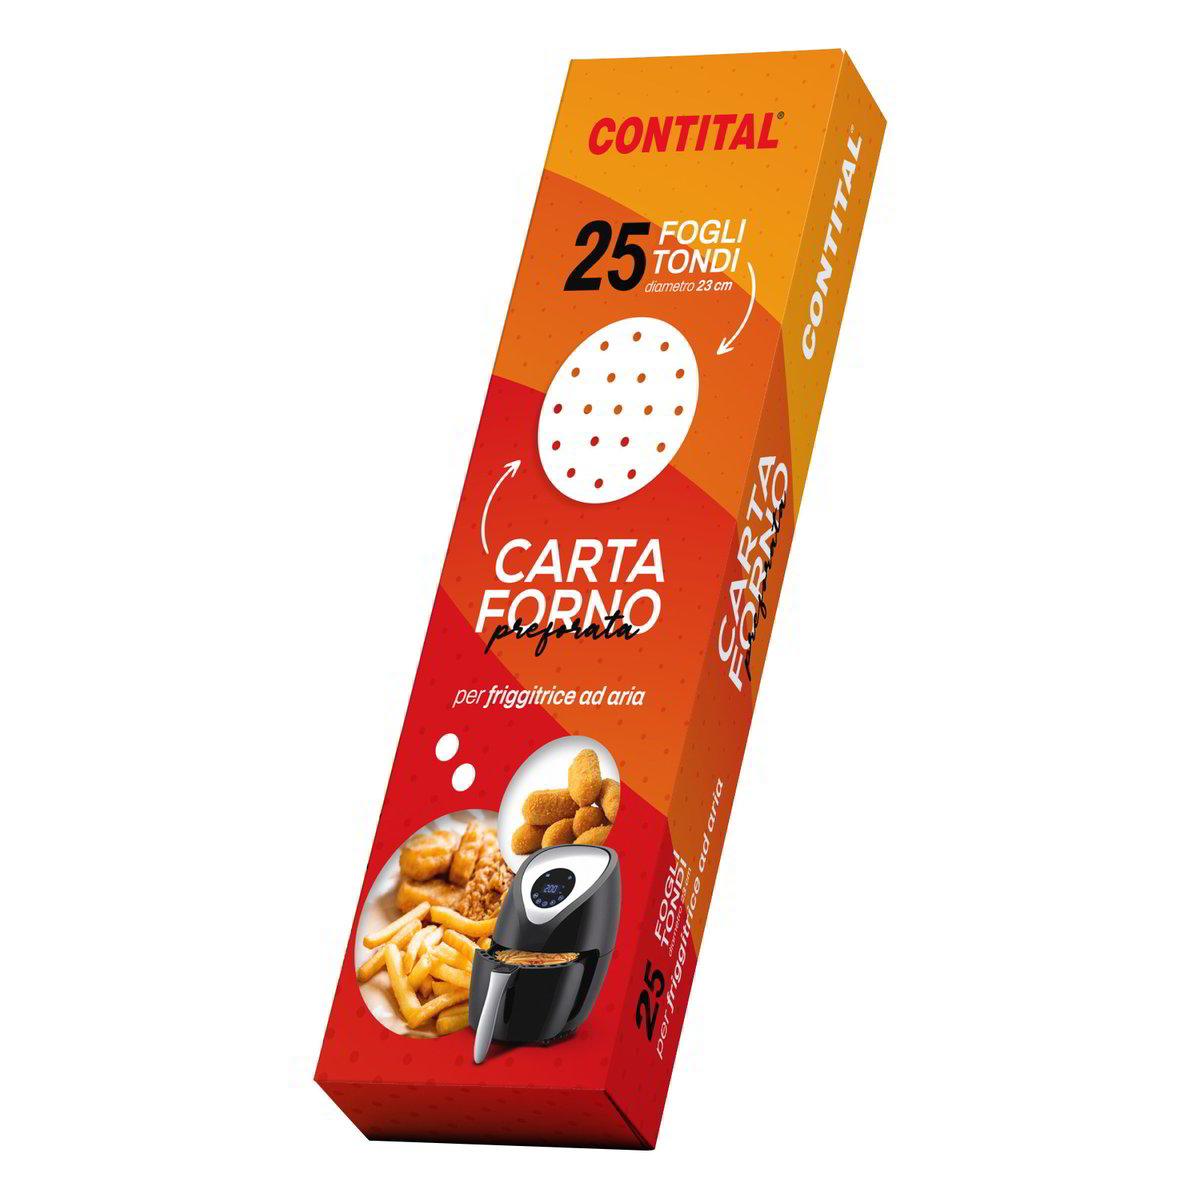 CARF2276CO-CARTA FORNO PREFORATA PER FRIGGITRICE AD ARIA TONDA